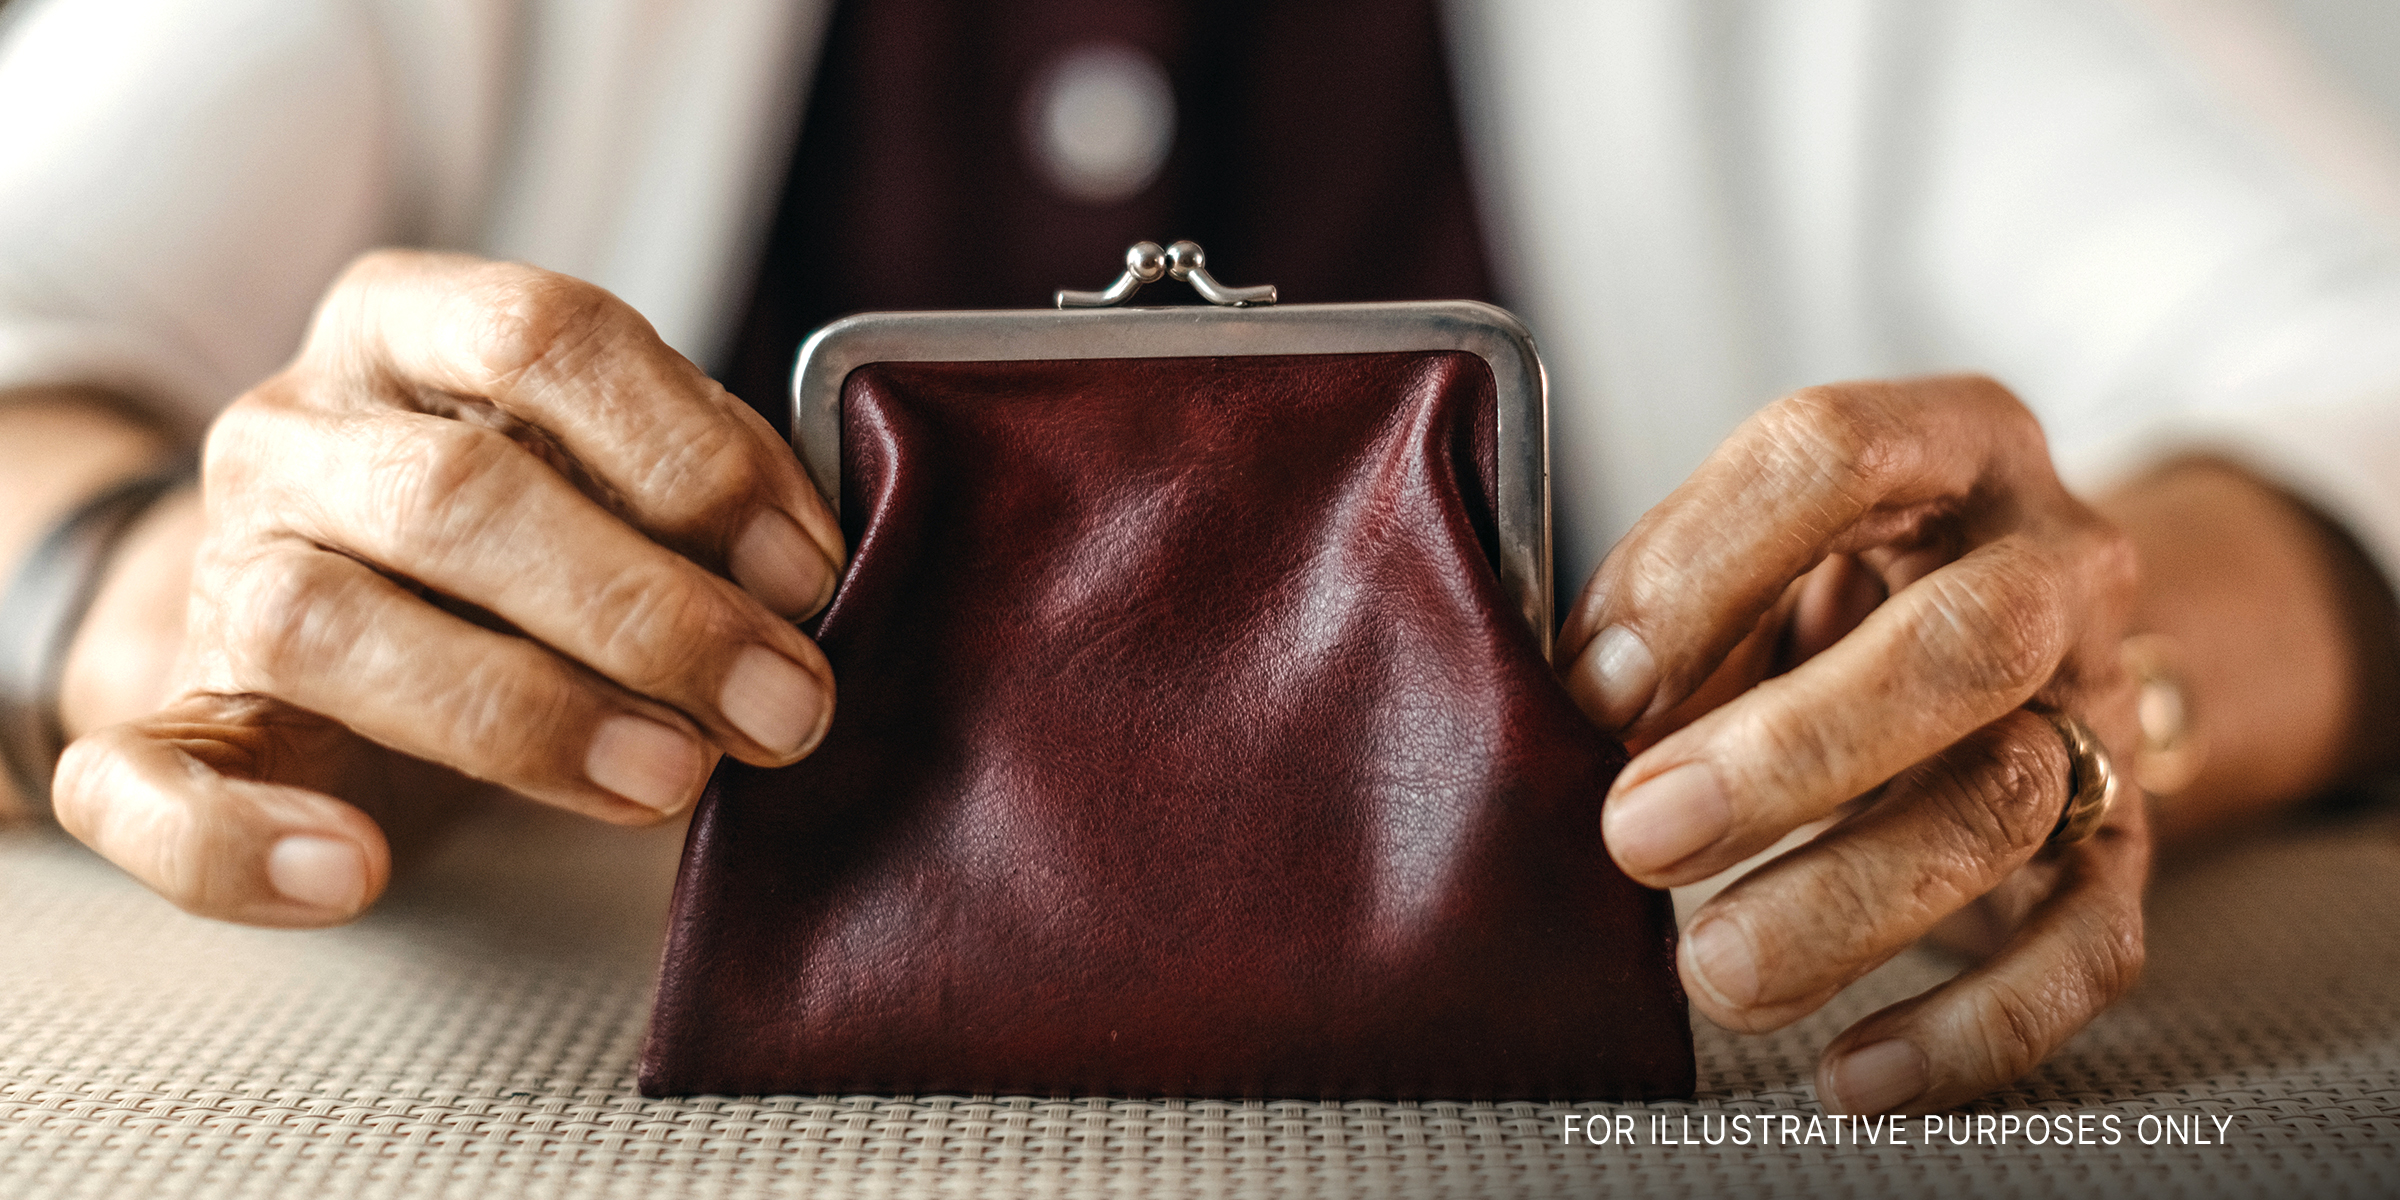 Frau hält eine Brieftasche | Quelle: Getty Images